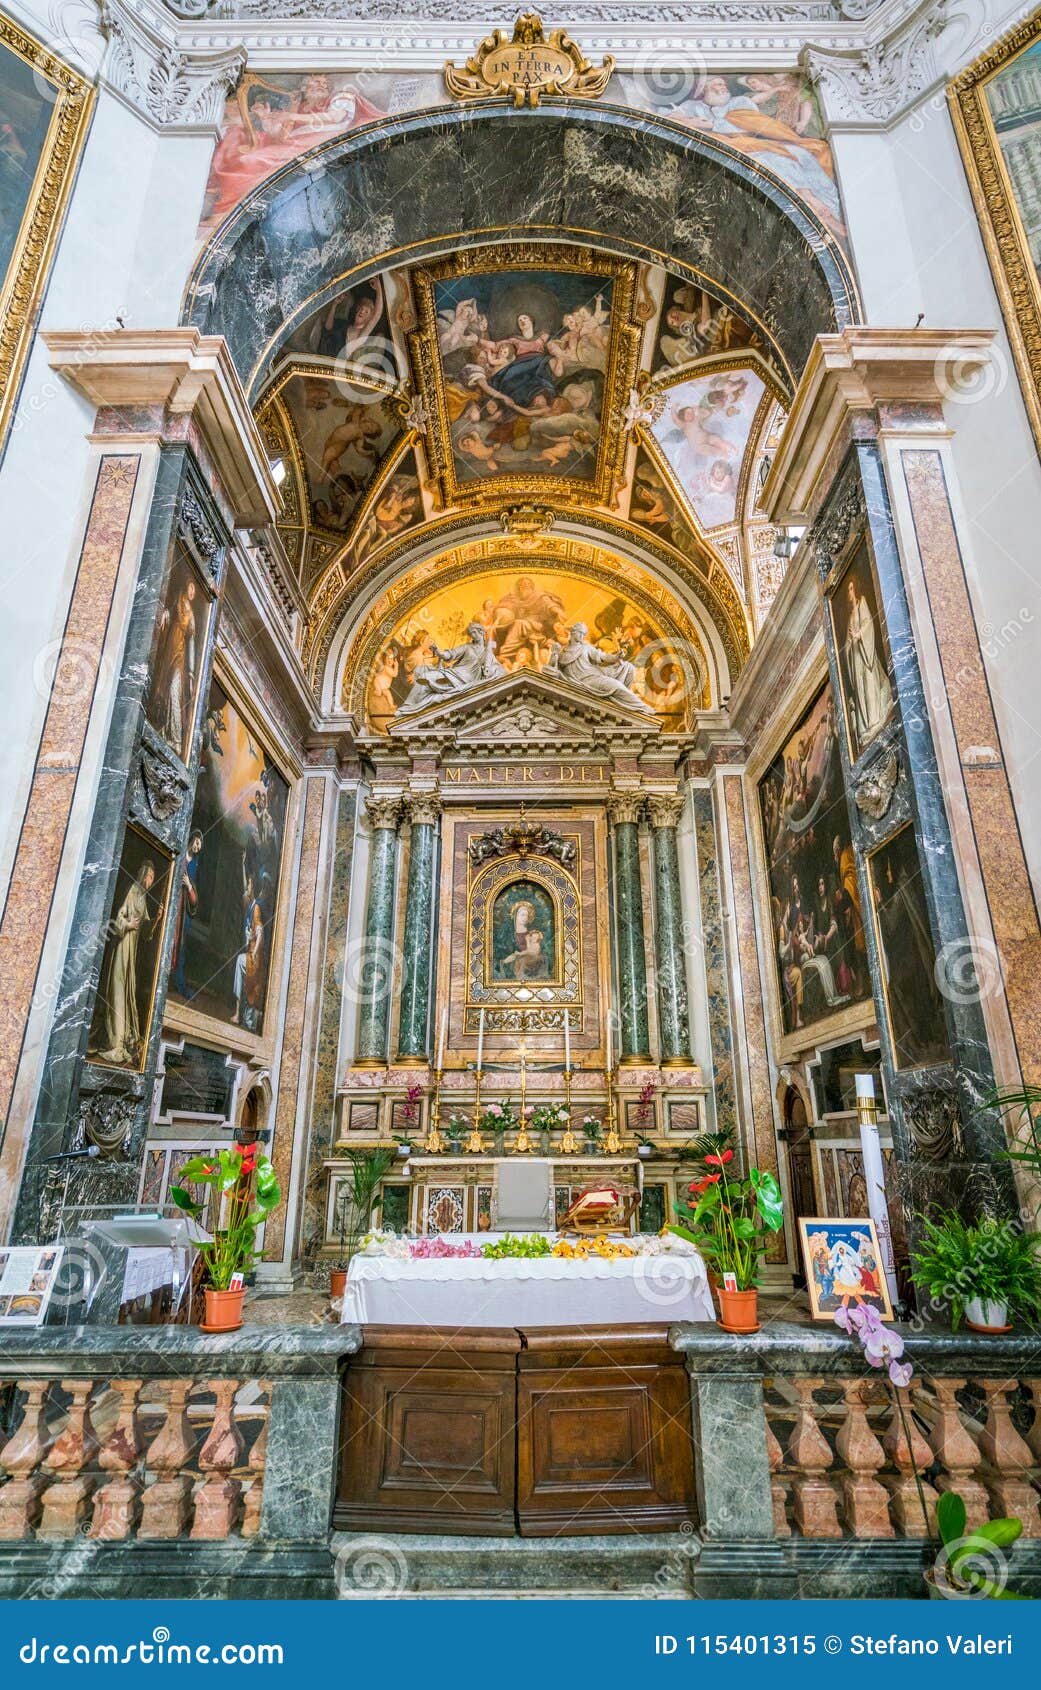 main altar in the church of santa maria della pace in rome, italy.